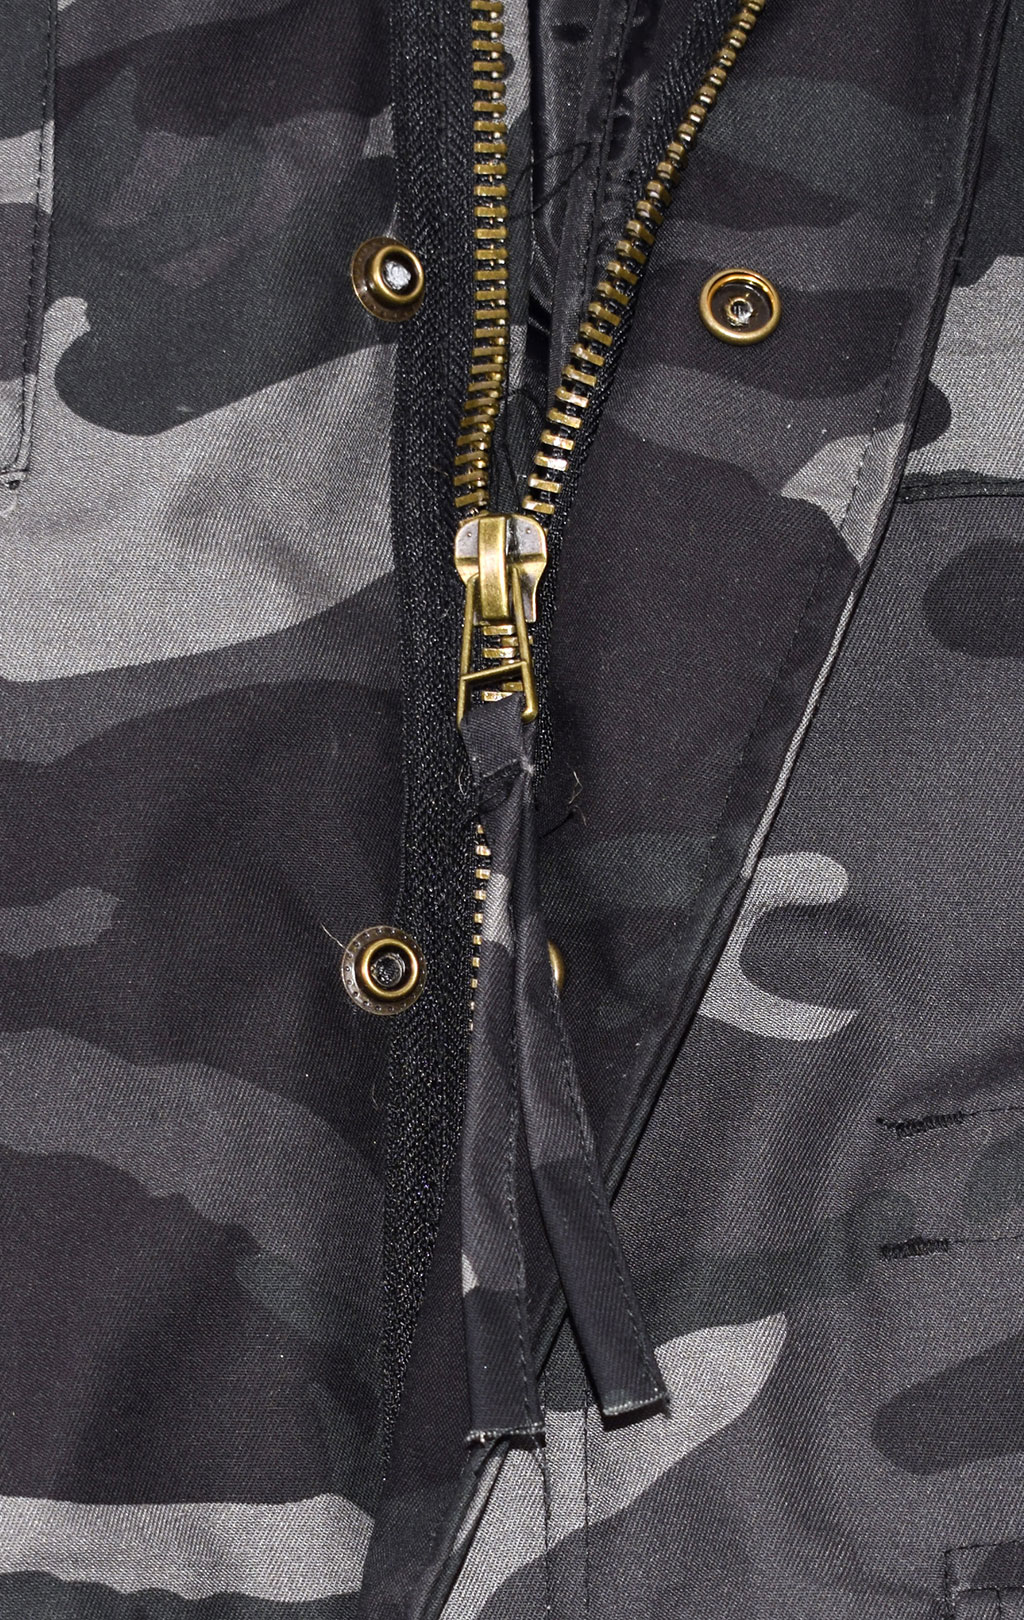 Куртка Surplus M-65 с подстёжкой camo black 